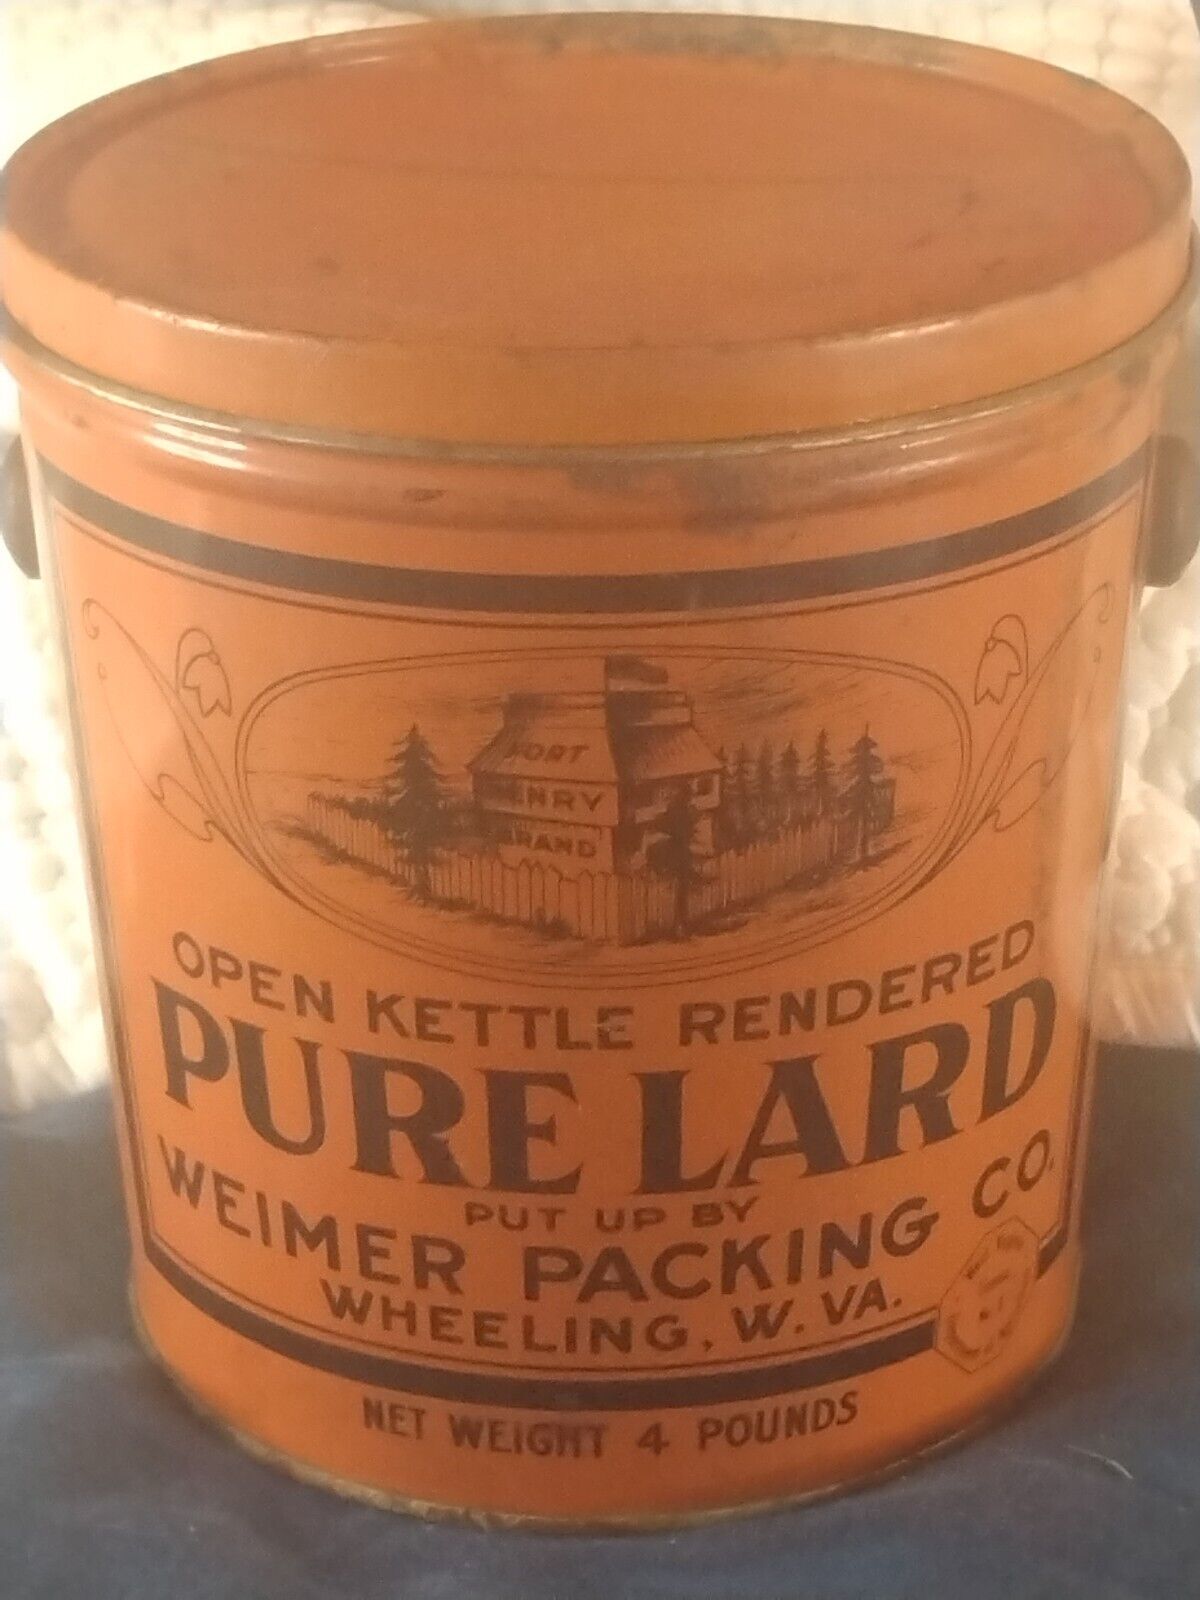 Vintage Lard Advertising Tin Bucket Weimer Packing Co. Wheeling Wv